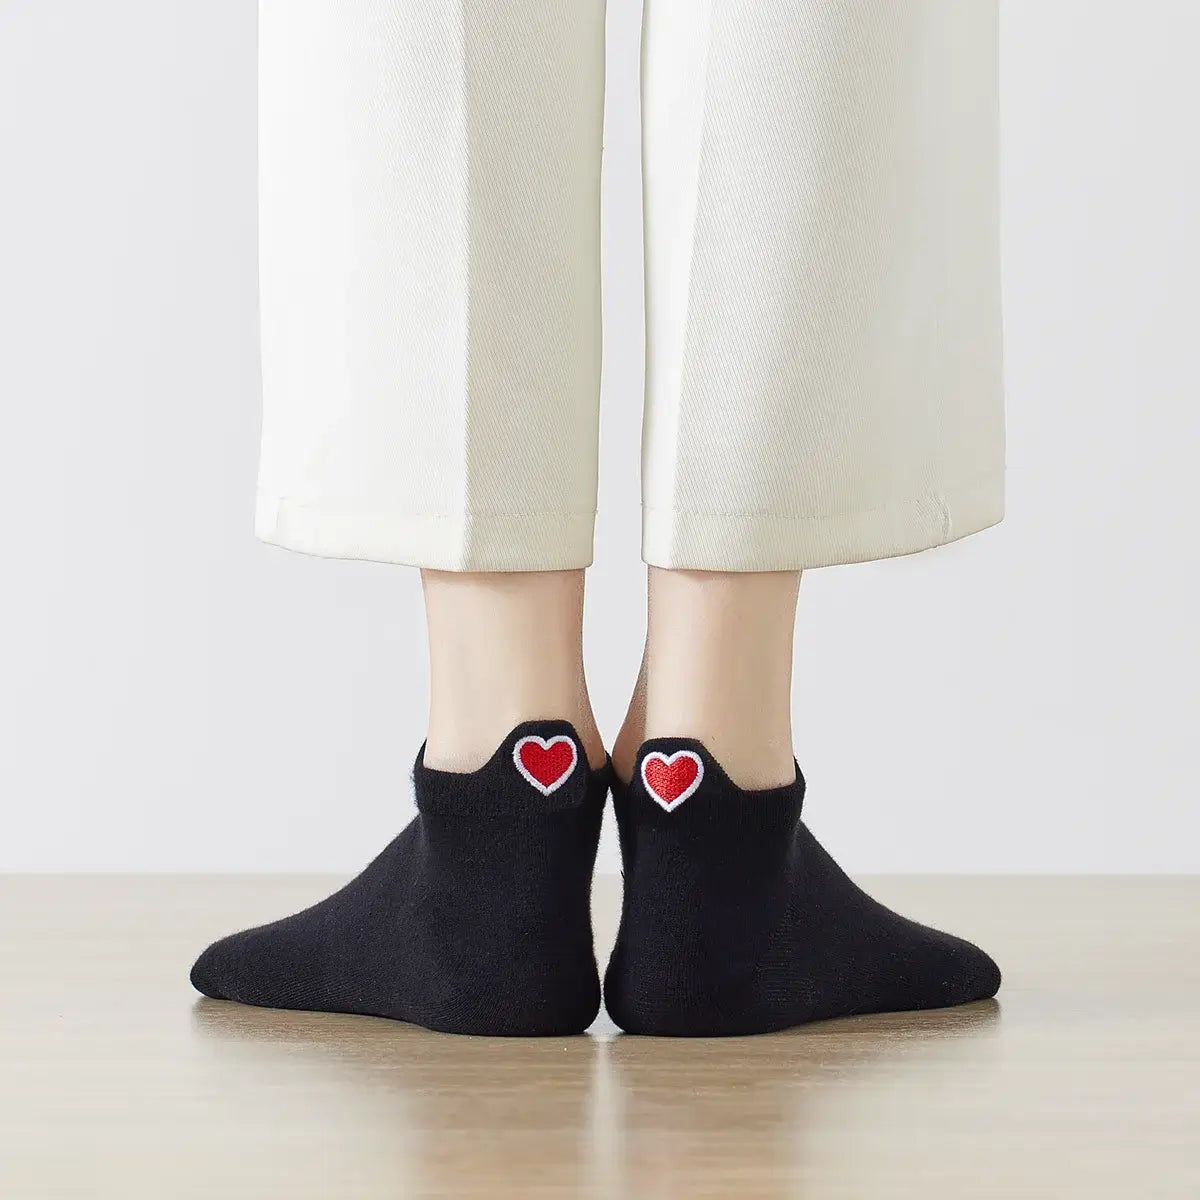 Chaussettes noir en coton à languette cœur rouge pour femme | Chaussettes douces et respirantes | Fabriquées à partir de matériaux de haute qualité | Un cadeau parfait pour les femmes de tous âges